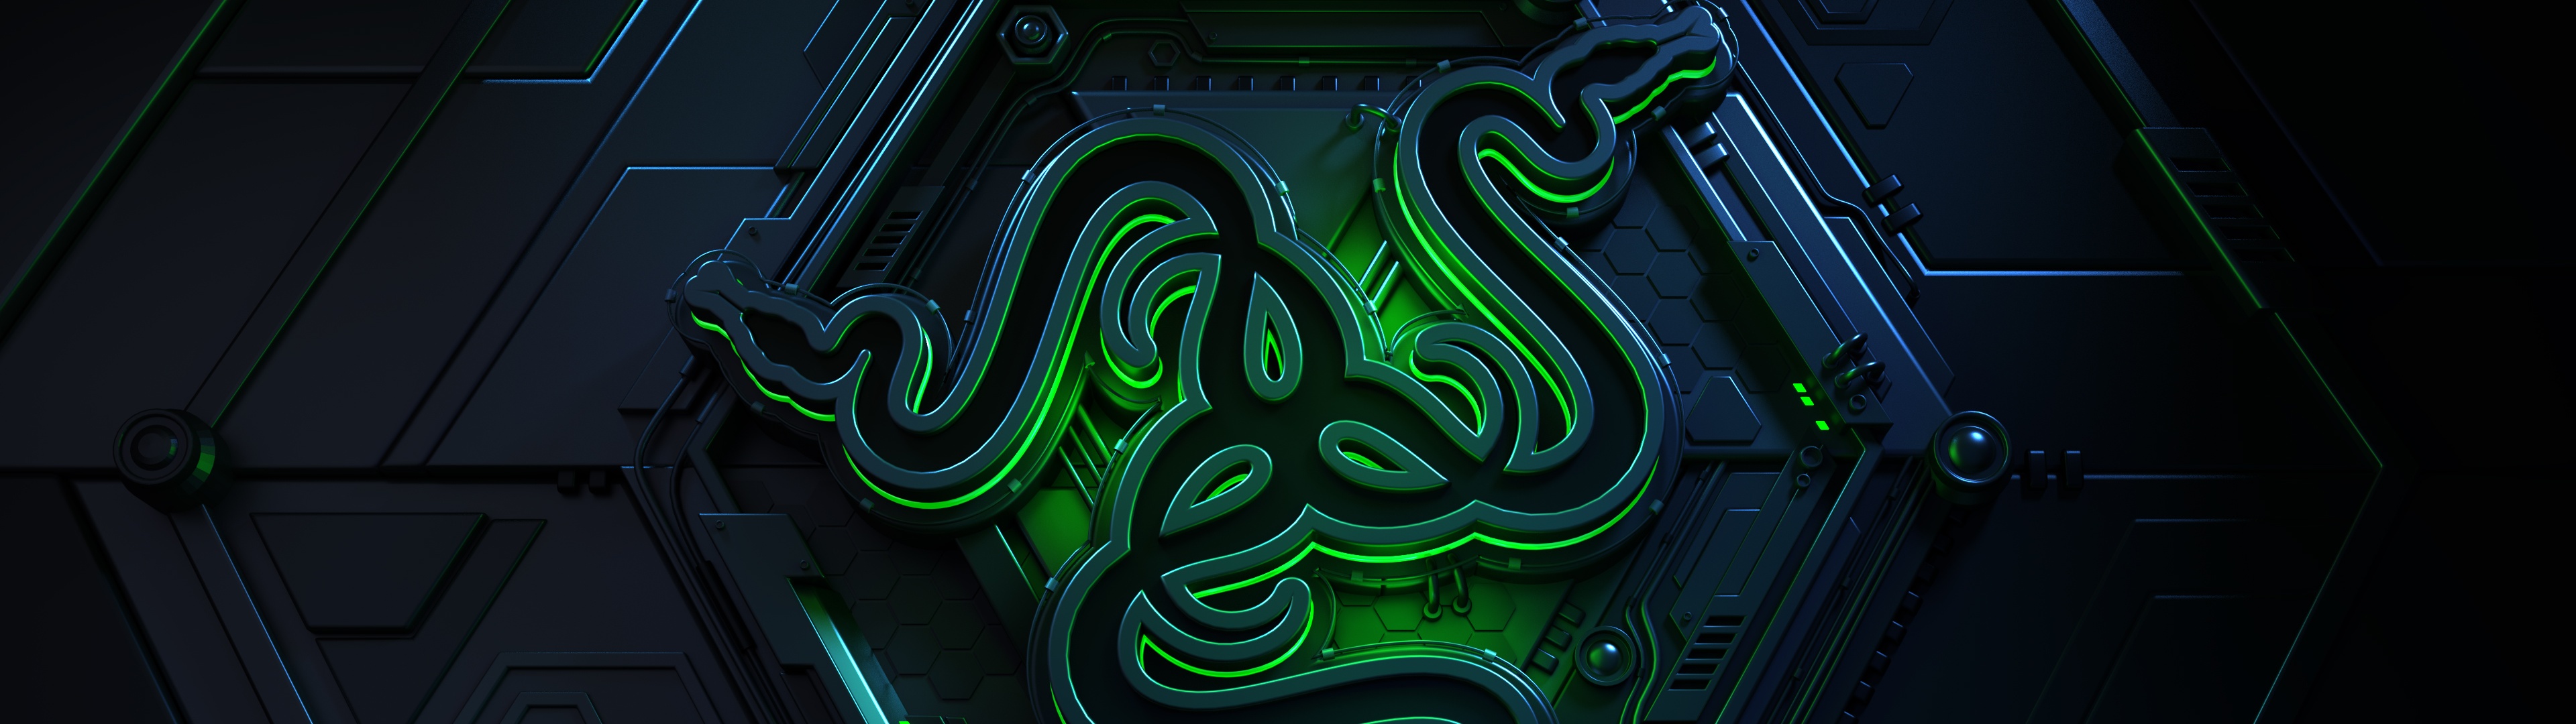 Bạn yêu thích màu xanh lá cây và trừu tượng? Hãy xem ngay phông nền Razer 4K với độ tối hoàn hảo, sẽ khiến cho máy tính của bạn trở nên ấn tượng hơn bao giờ hết.